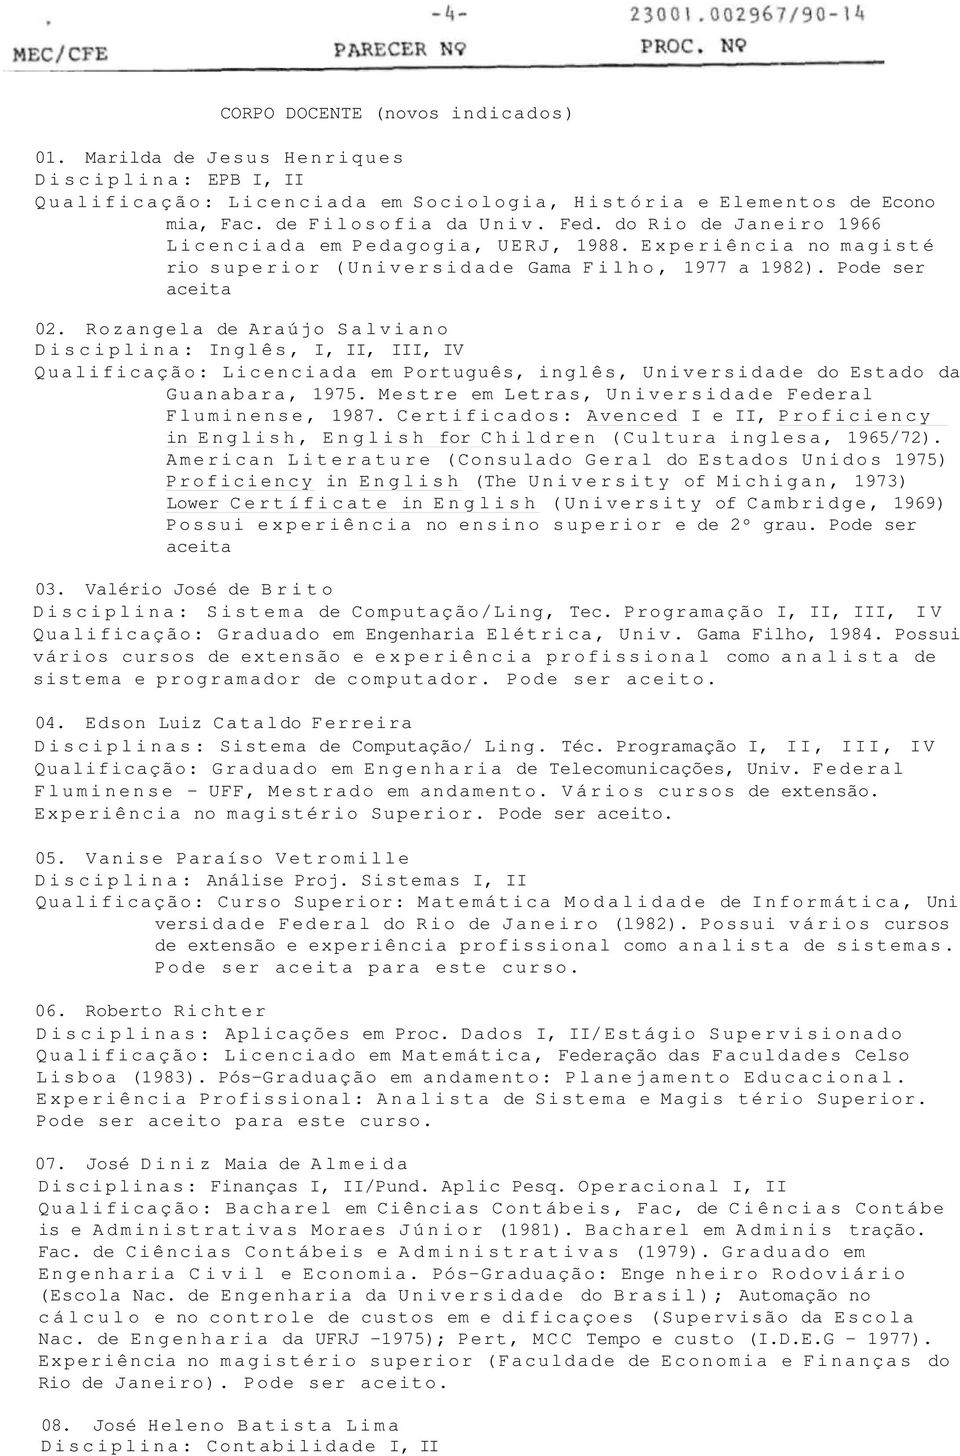 Rozangela de Araújo Salviano Disciplina: Inglês, I, II, III, IV Qualificação: Licenciada em Português, inglês, Universidade do Estado da Guanabara, 1975.